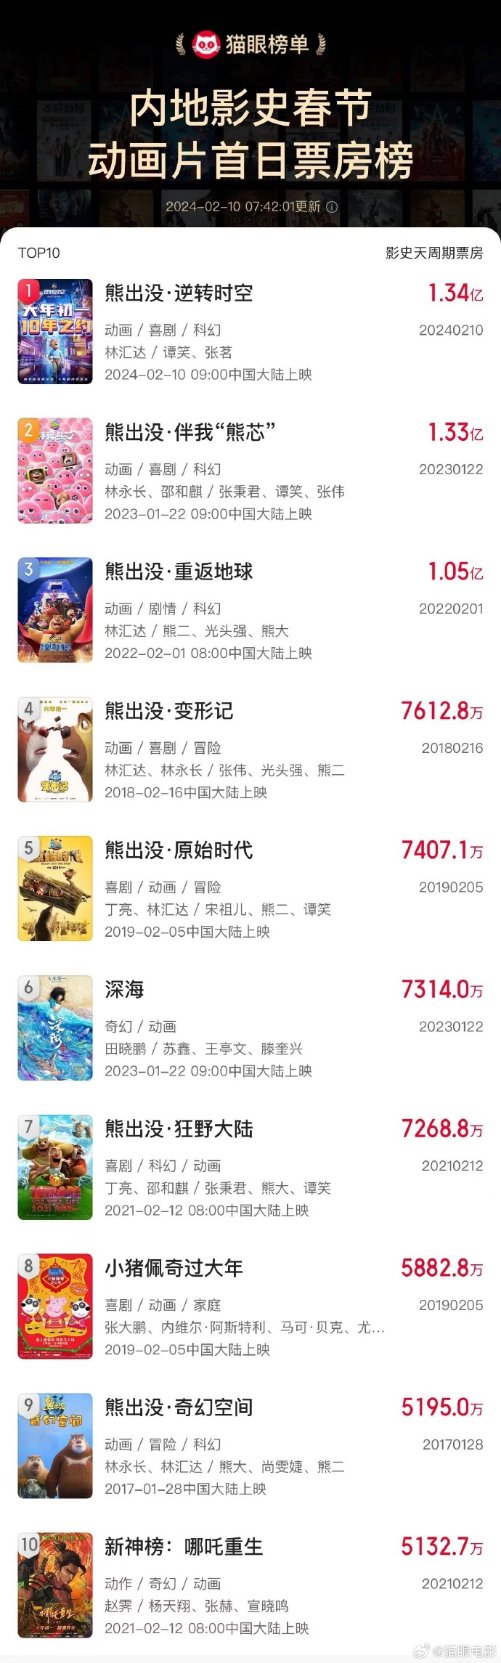 《熊出没·逆转时空》票房破1.34亿 成春节档动画首日票房冠军